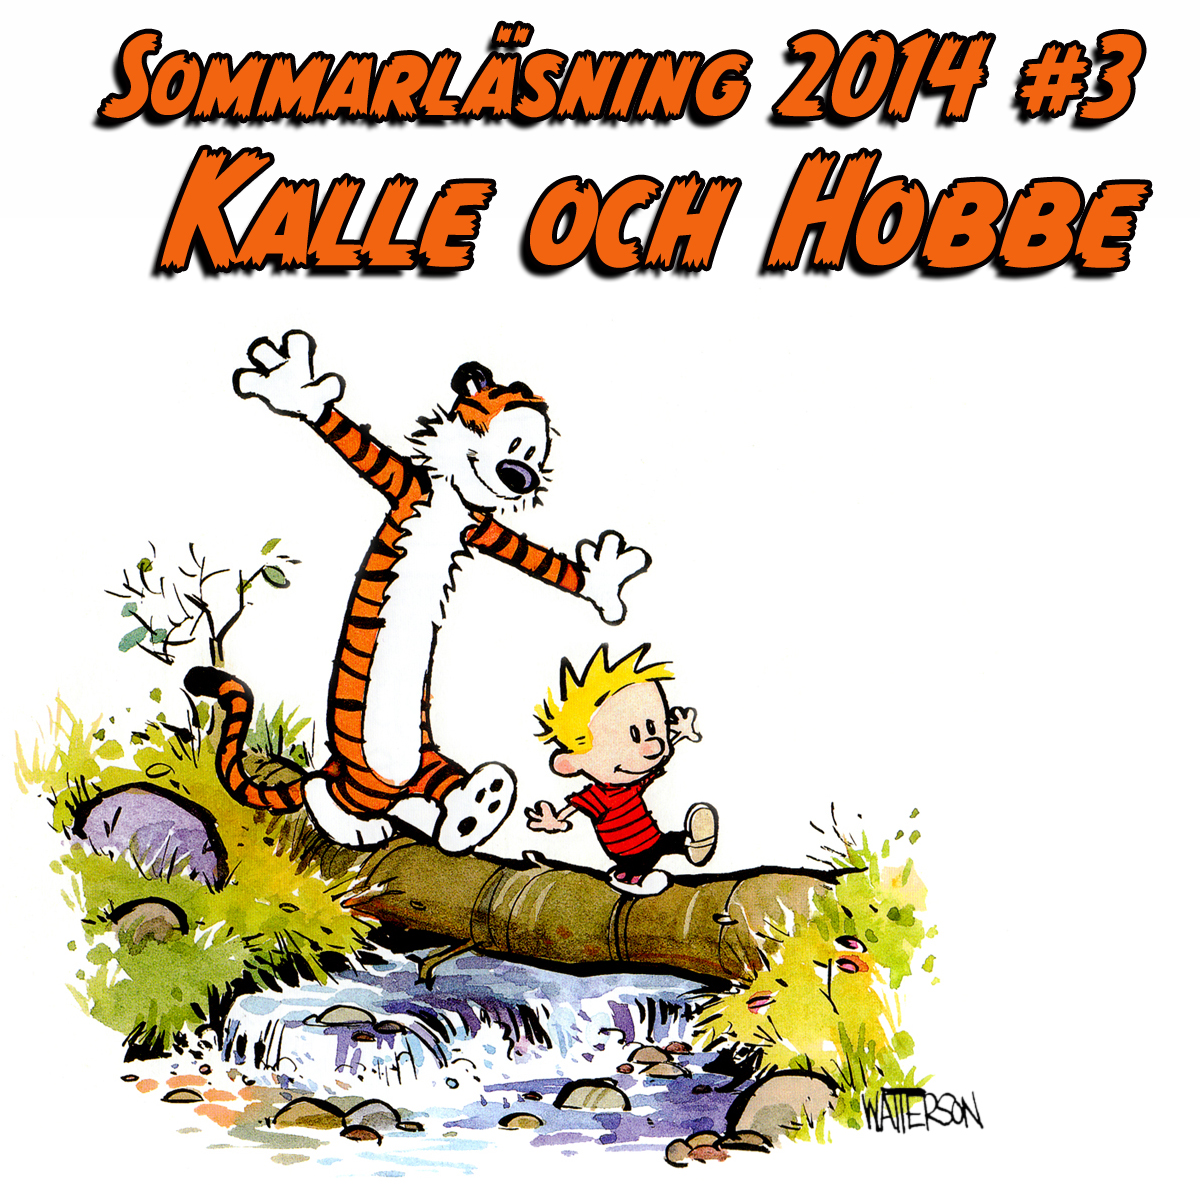 Sommarläsning #3 2014: Kalle och Hobbe